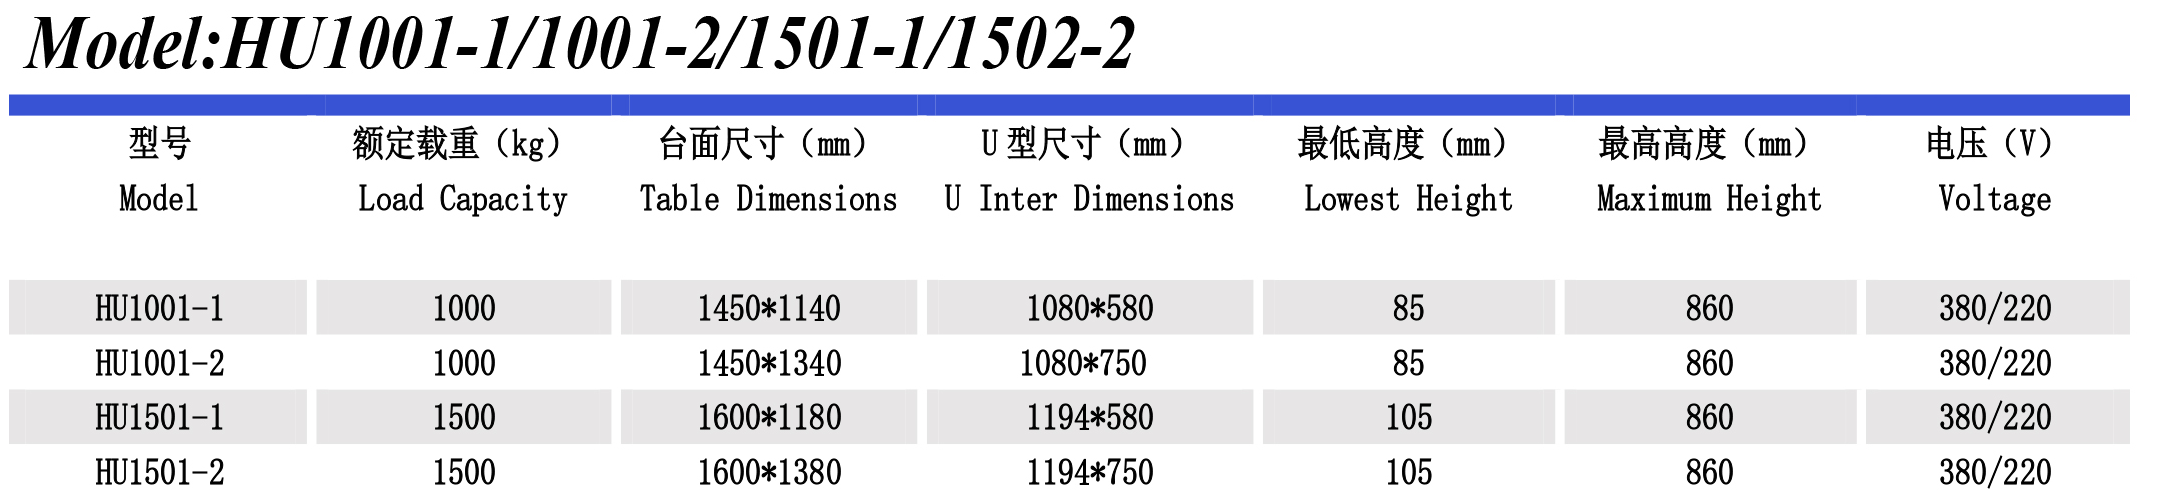 超低升降平台HU1501-1